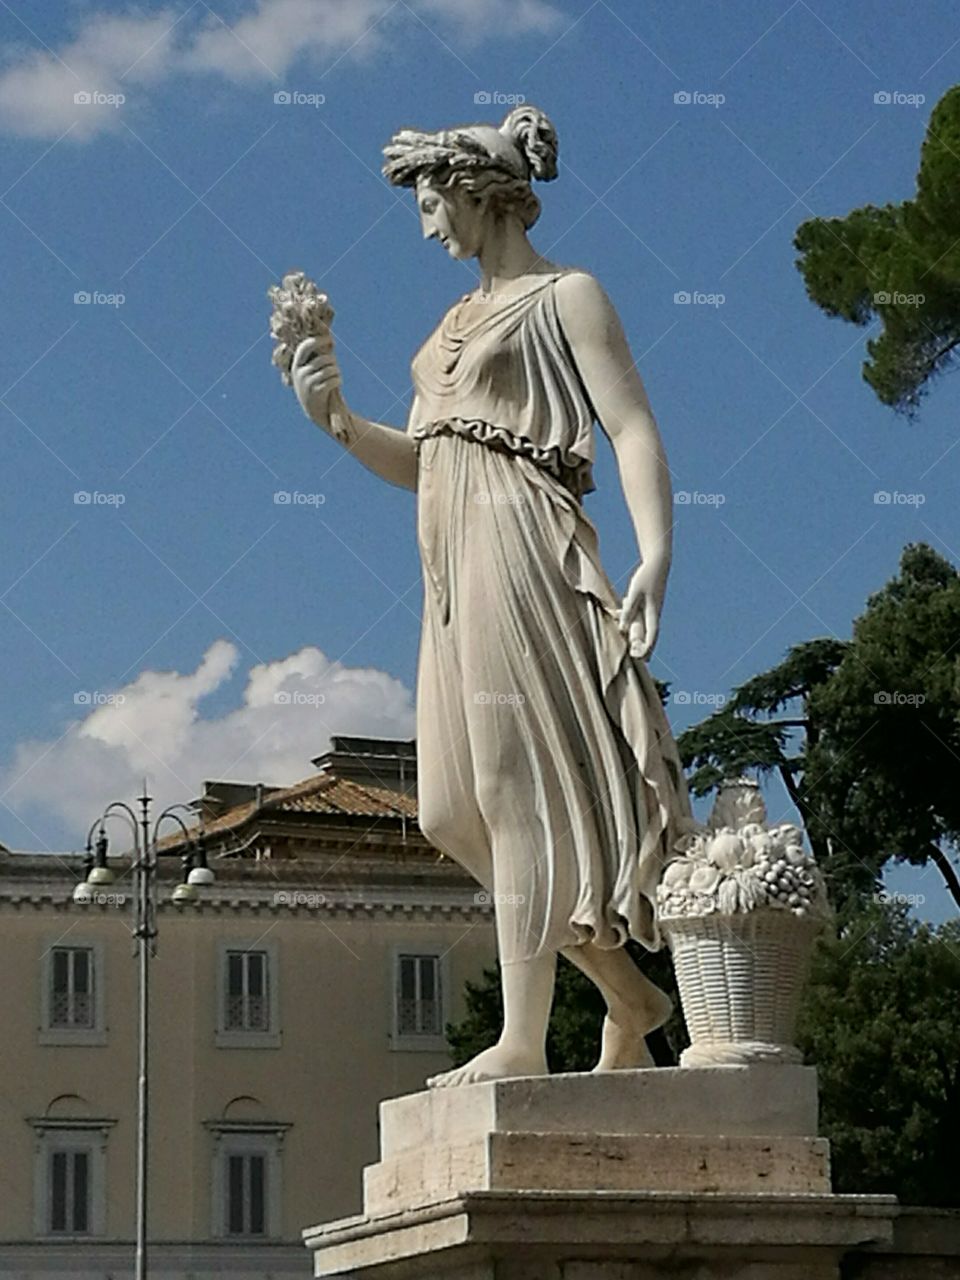 Statue, sculpture (Piazza del Popolo, Rome, Italy)